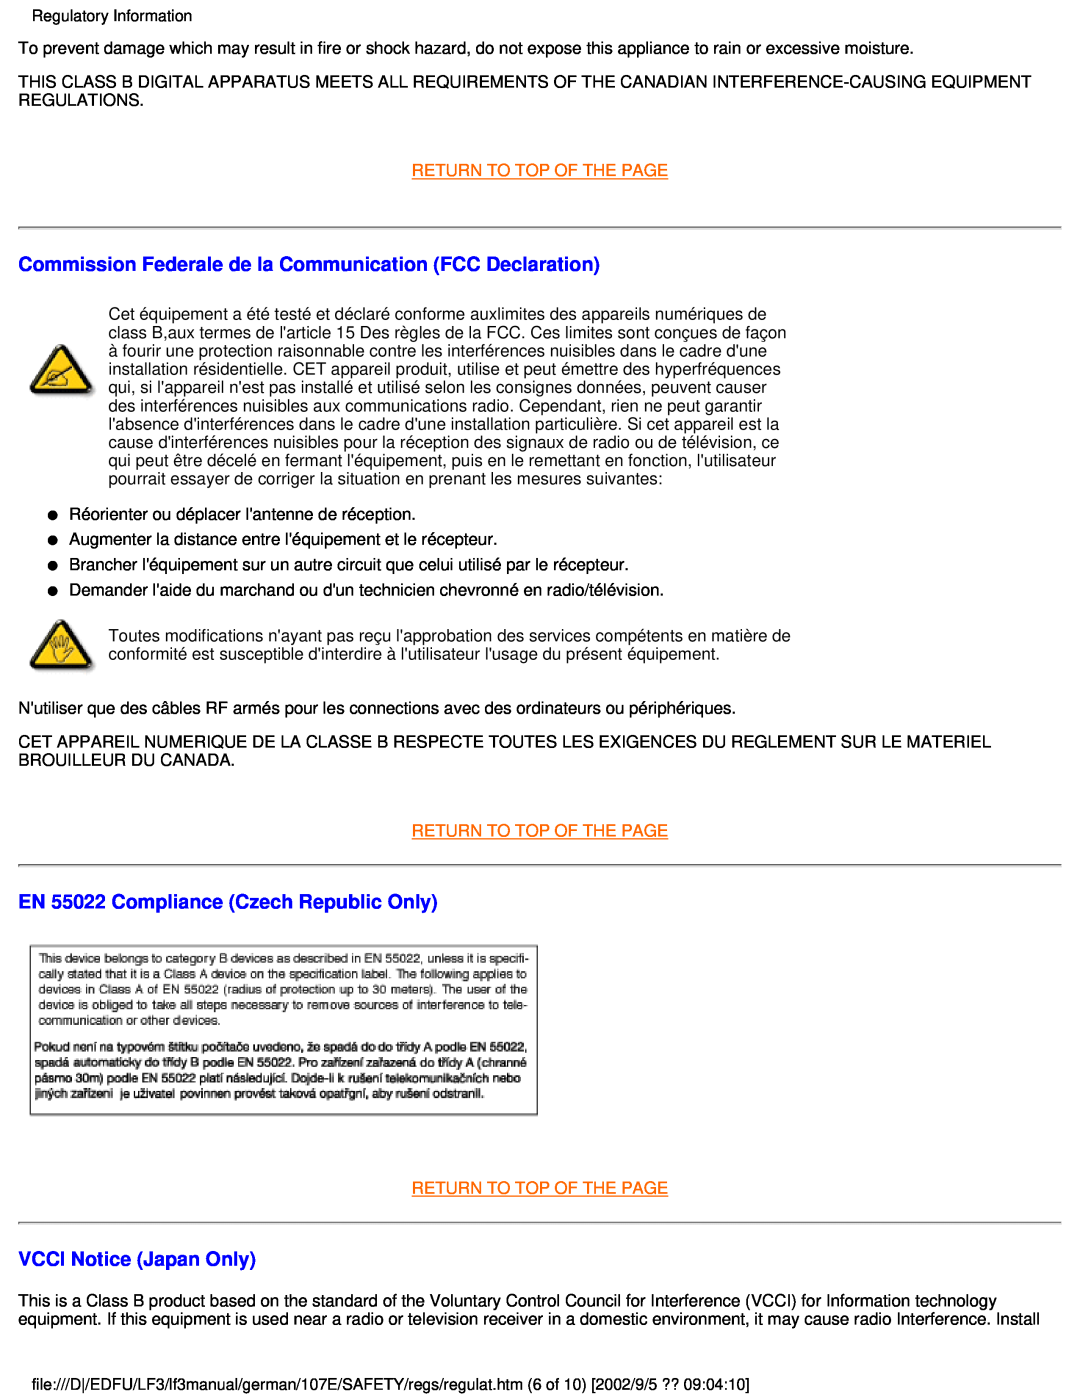 Philips 107E user manual Commission Federale de la Communication FCC Declaration, EN 55022 Compliance Czech Republic Only 